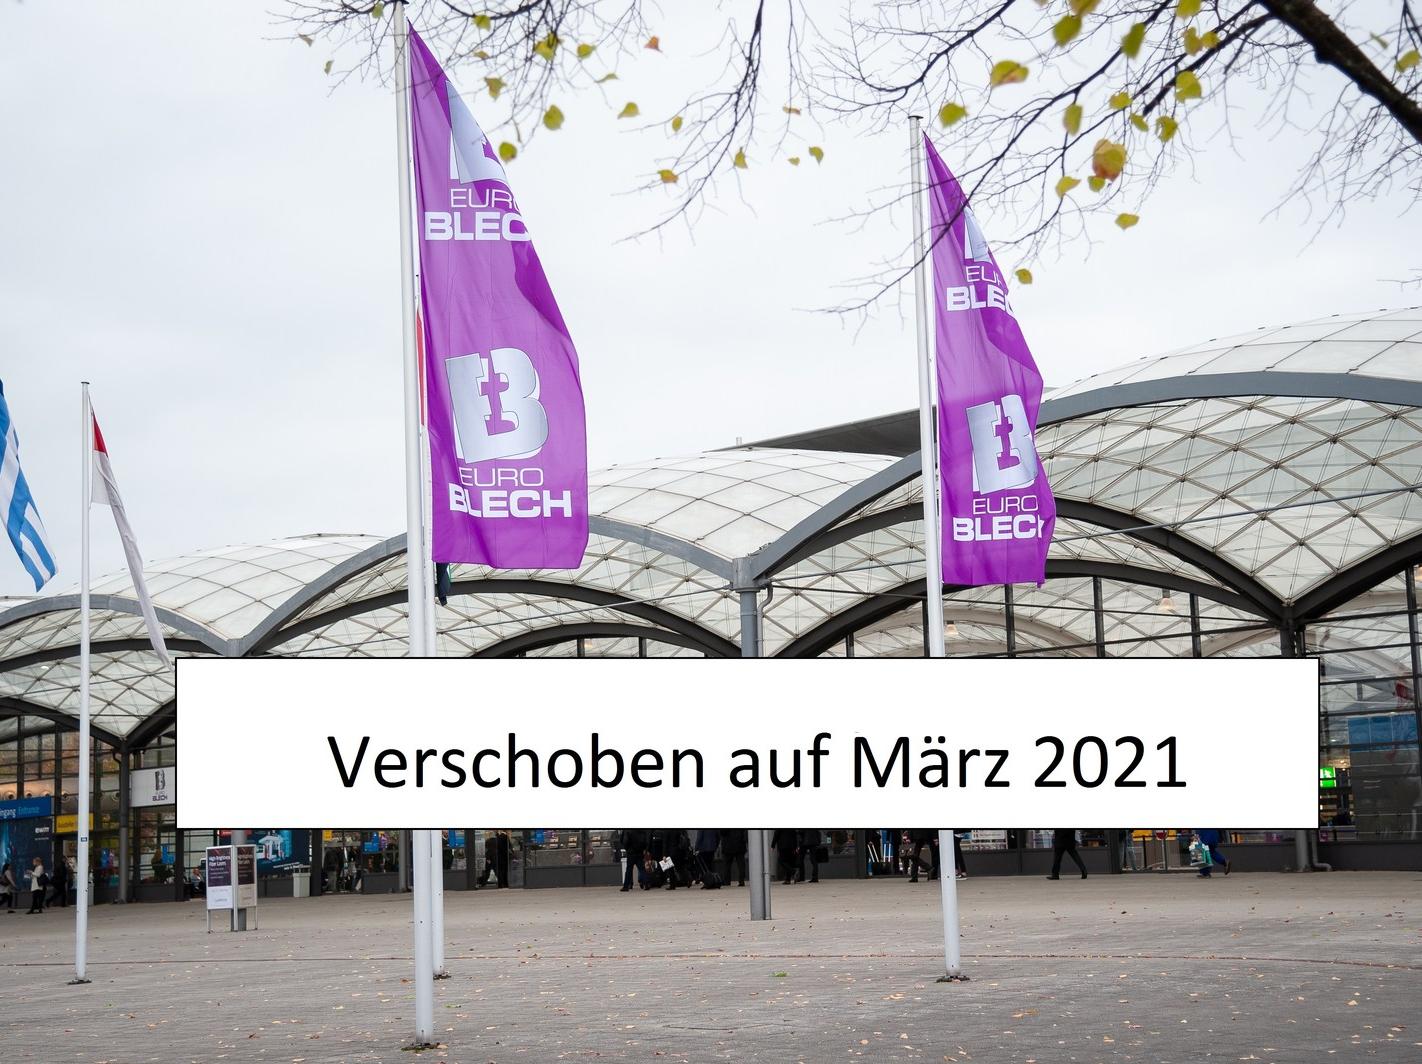 Die Messe Euroblech wurde verschoben auf März 2021.